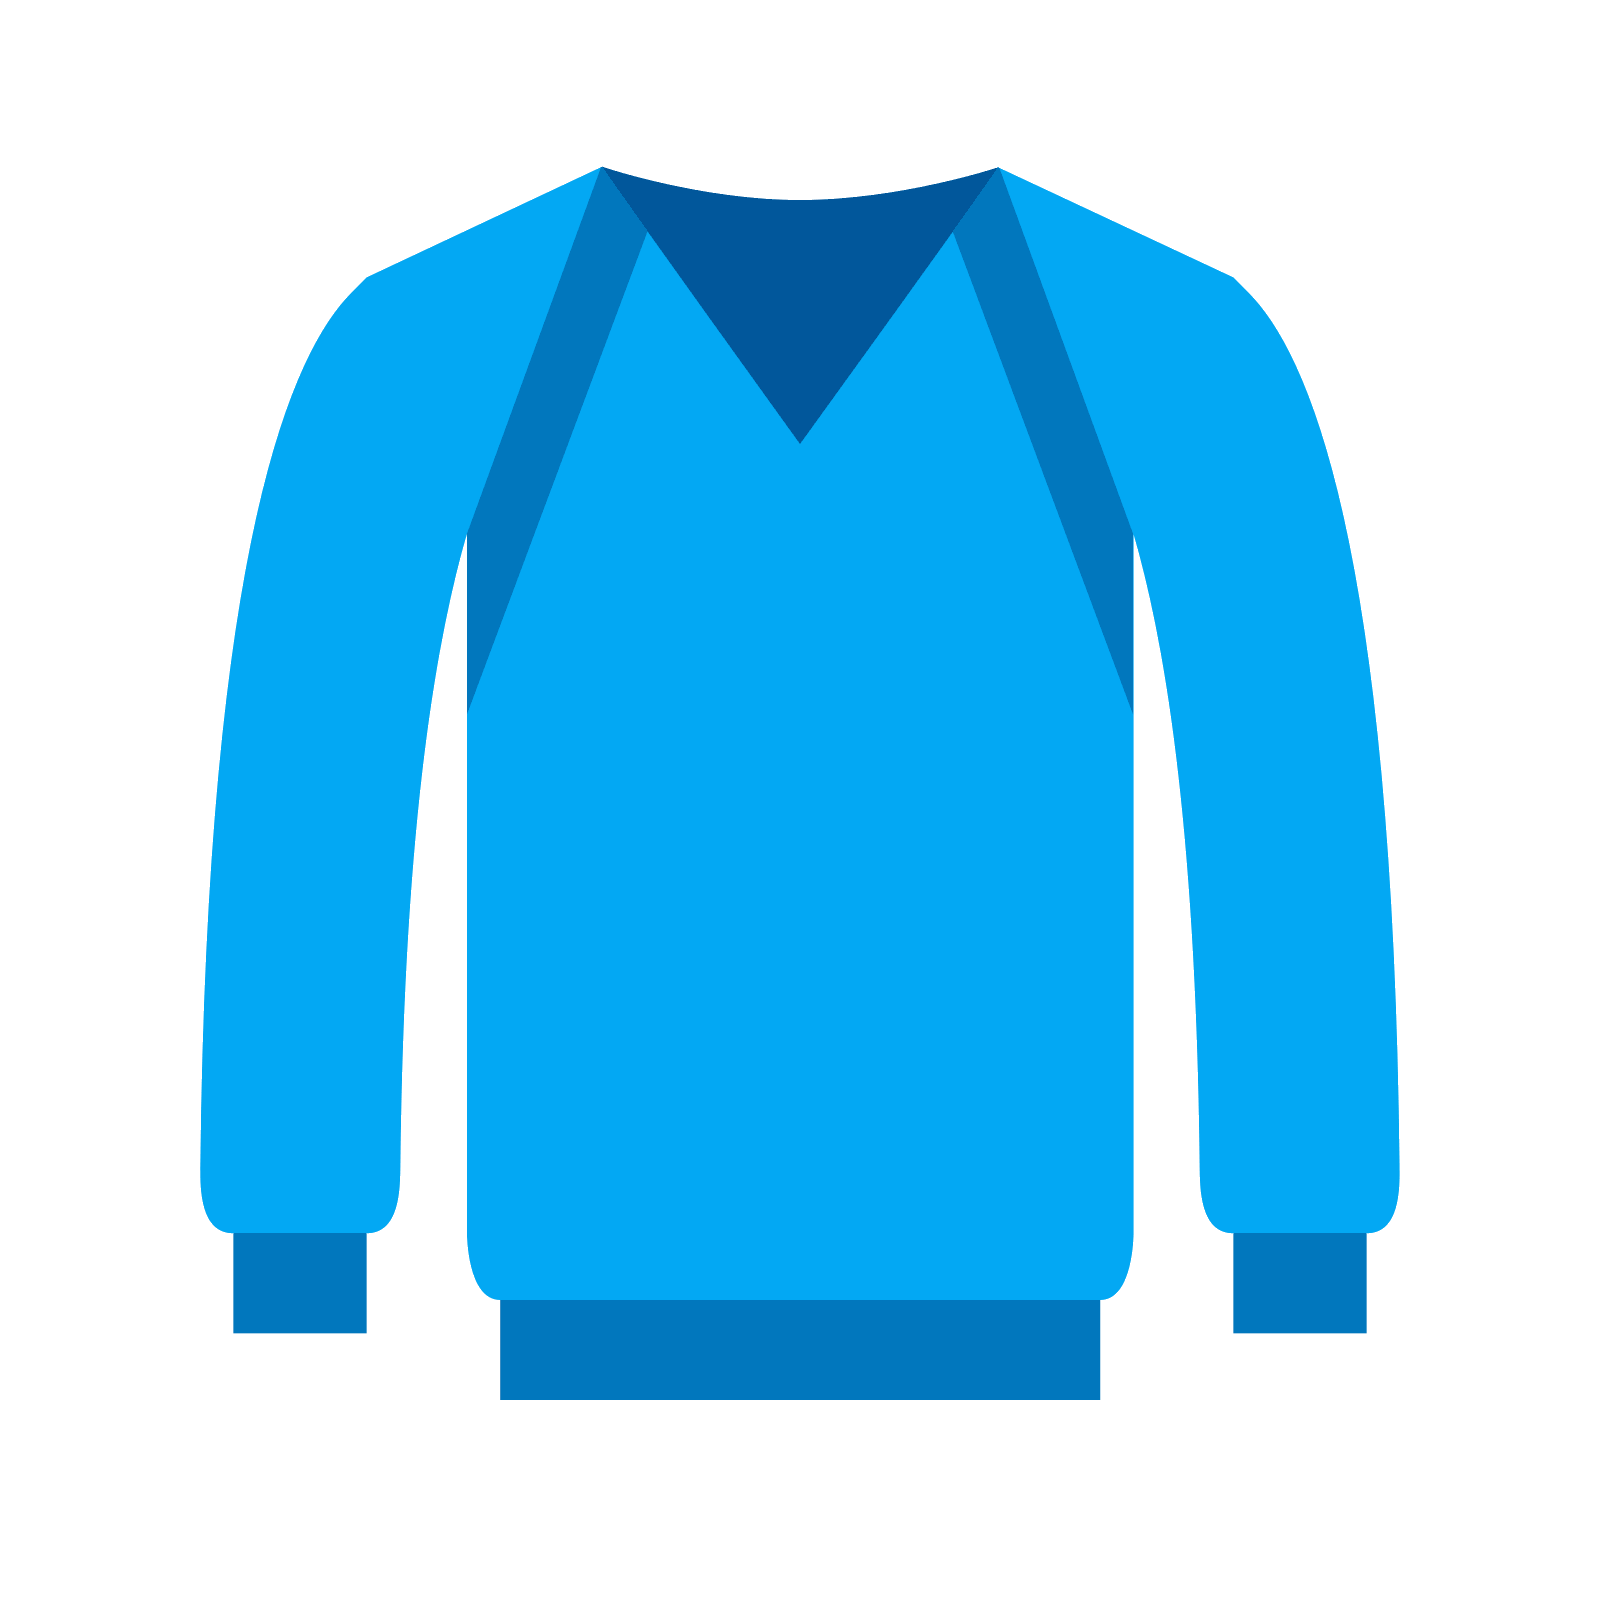 Jacket clipart blue jumper, Jacket blue jumper Transparent FREE for ...